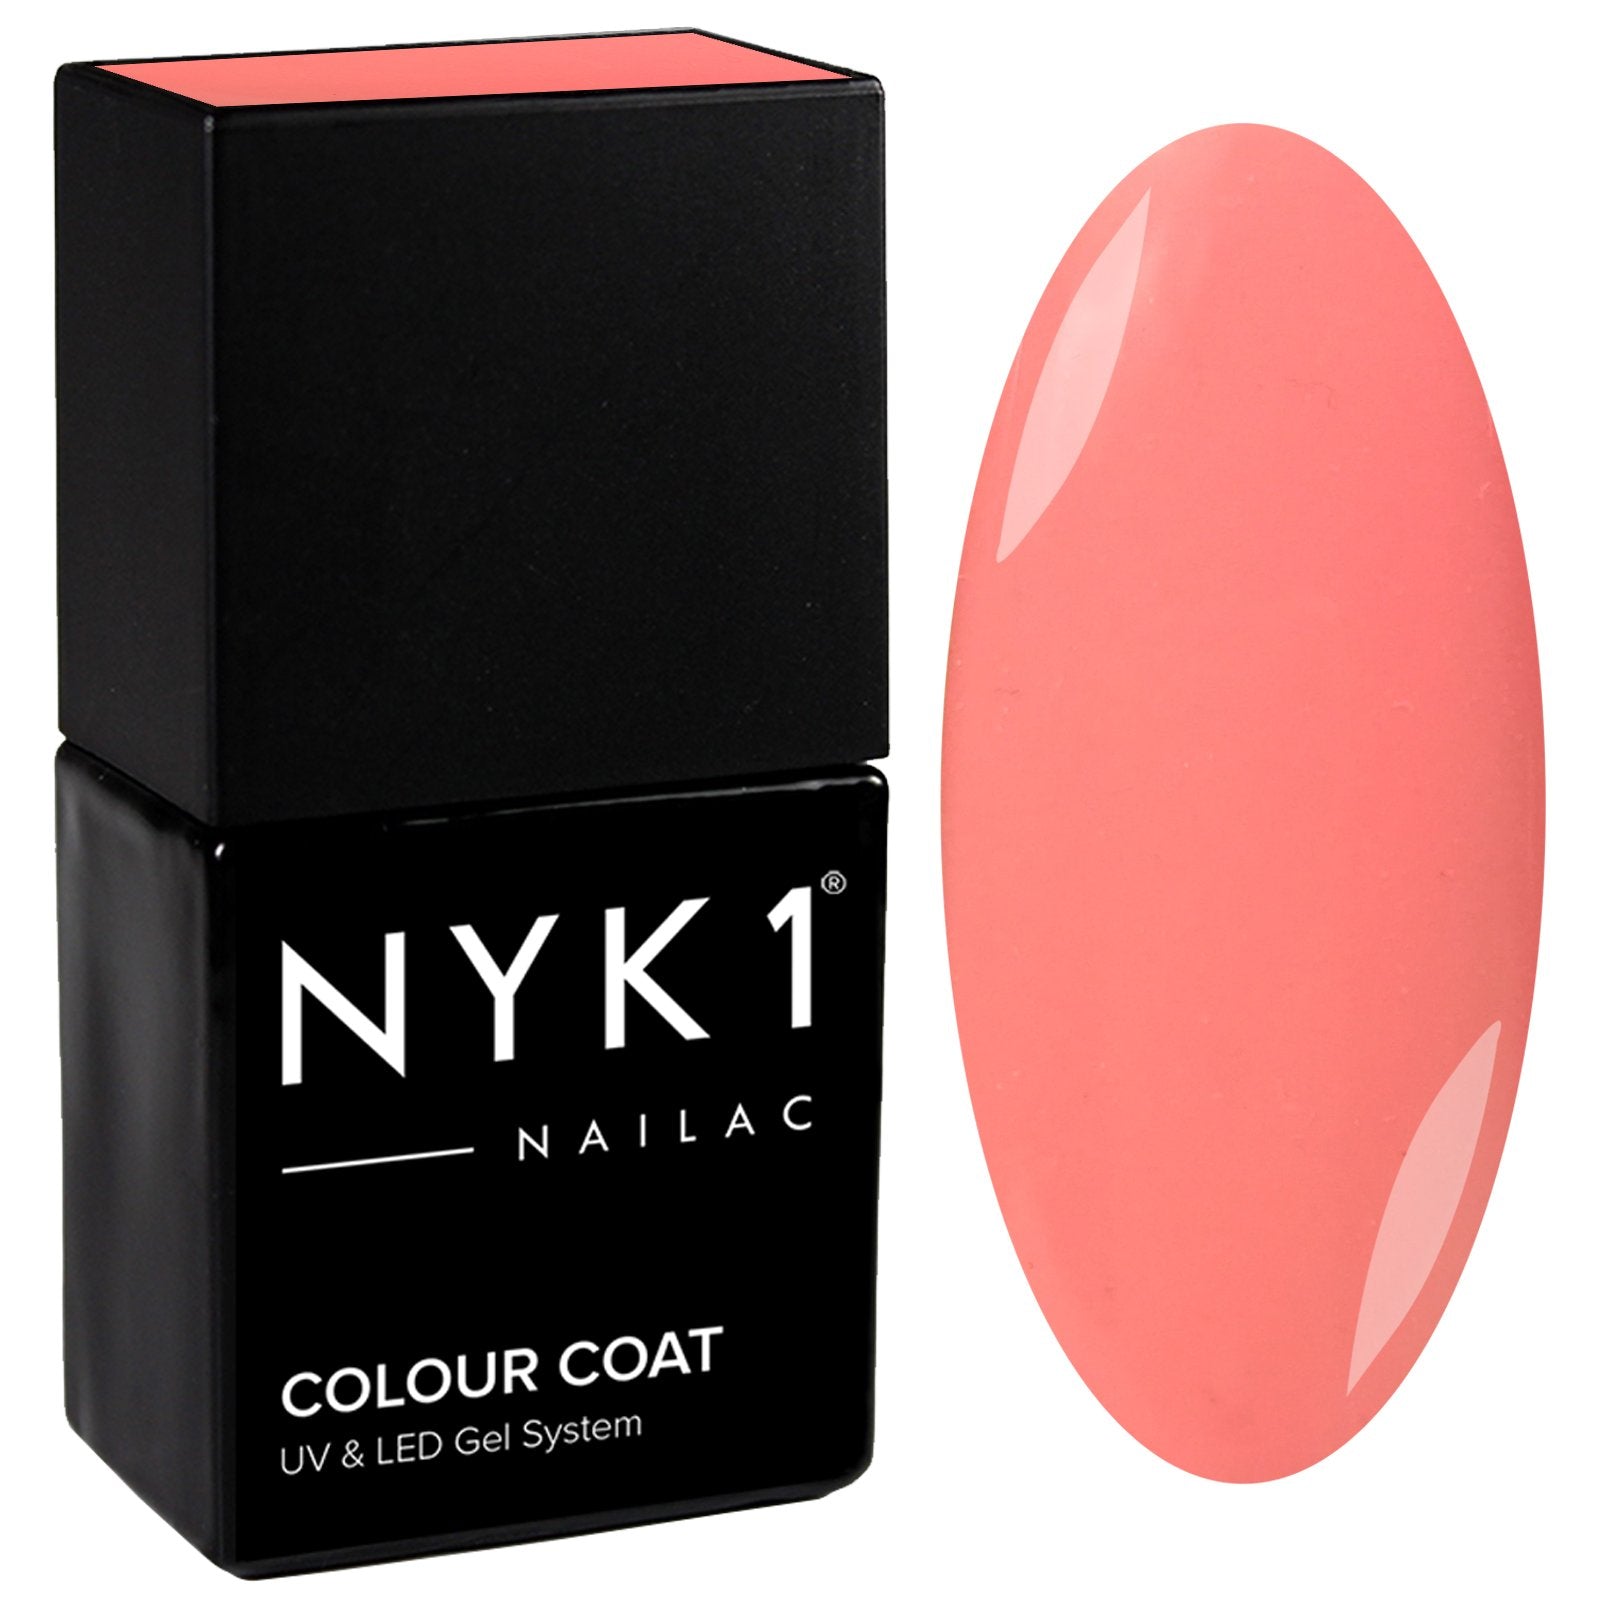 NYK1 Peach Perfect Pink Coral Gel Nail Polish